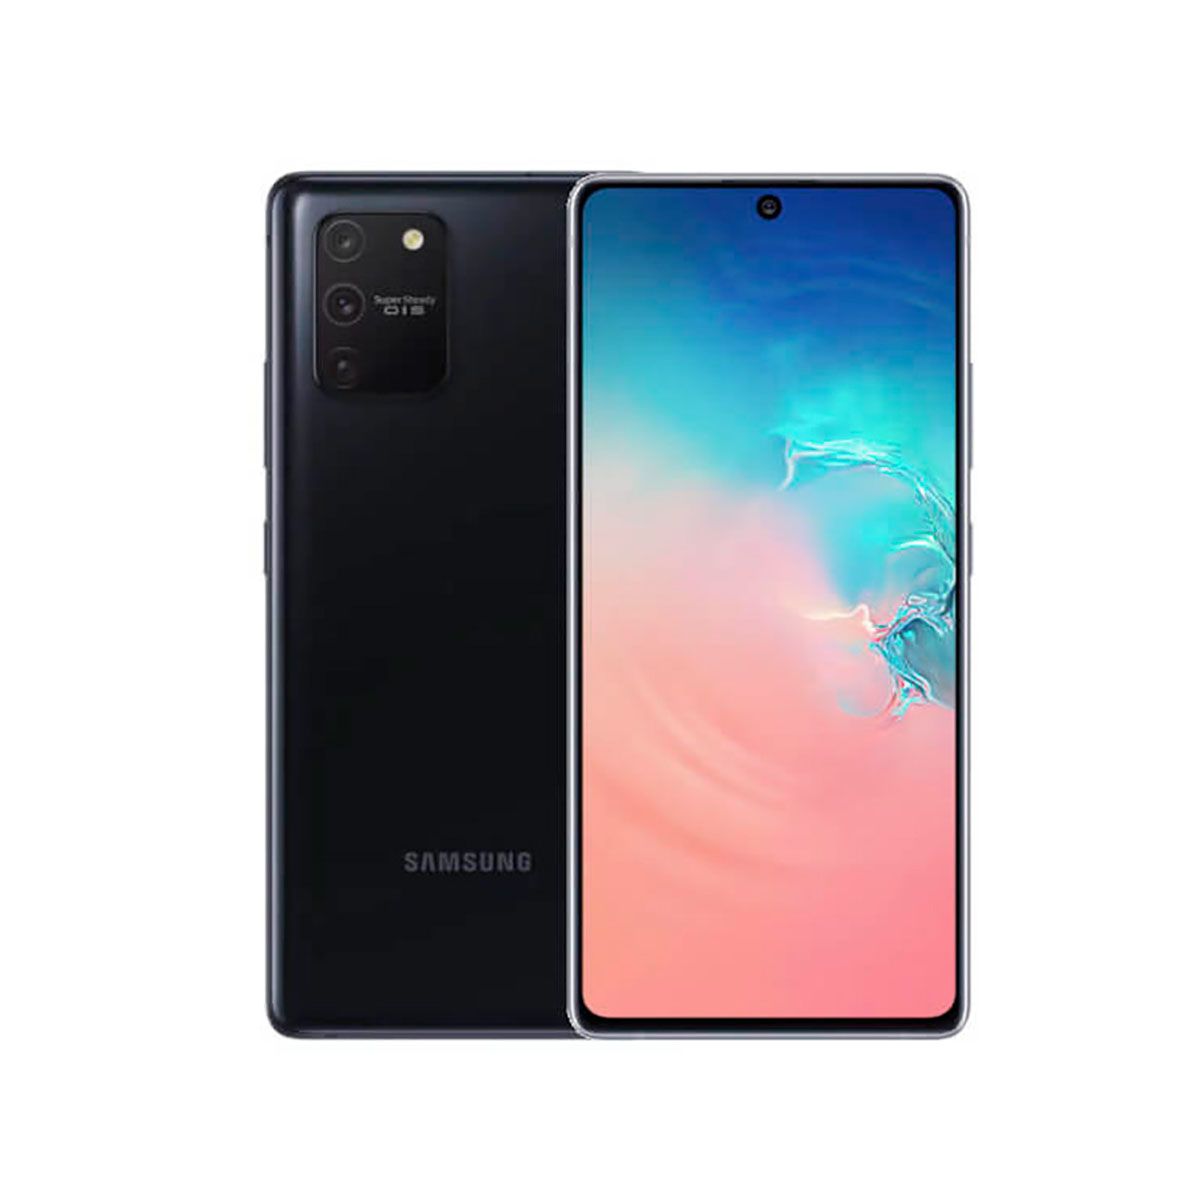 Samsung Galaxy S10 Lite 8GB/128GB Black Dual SIM G770